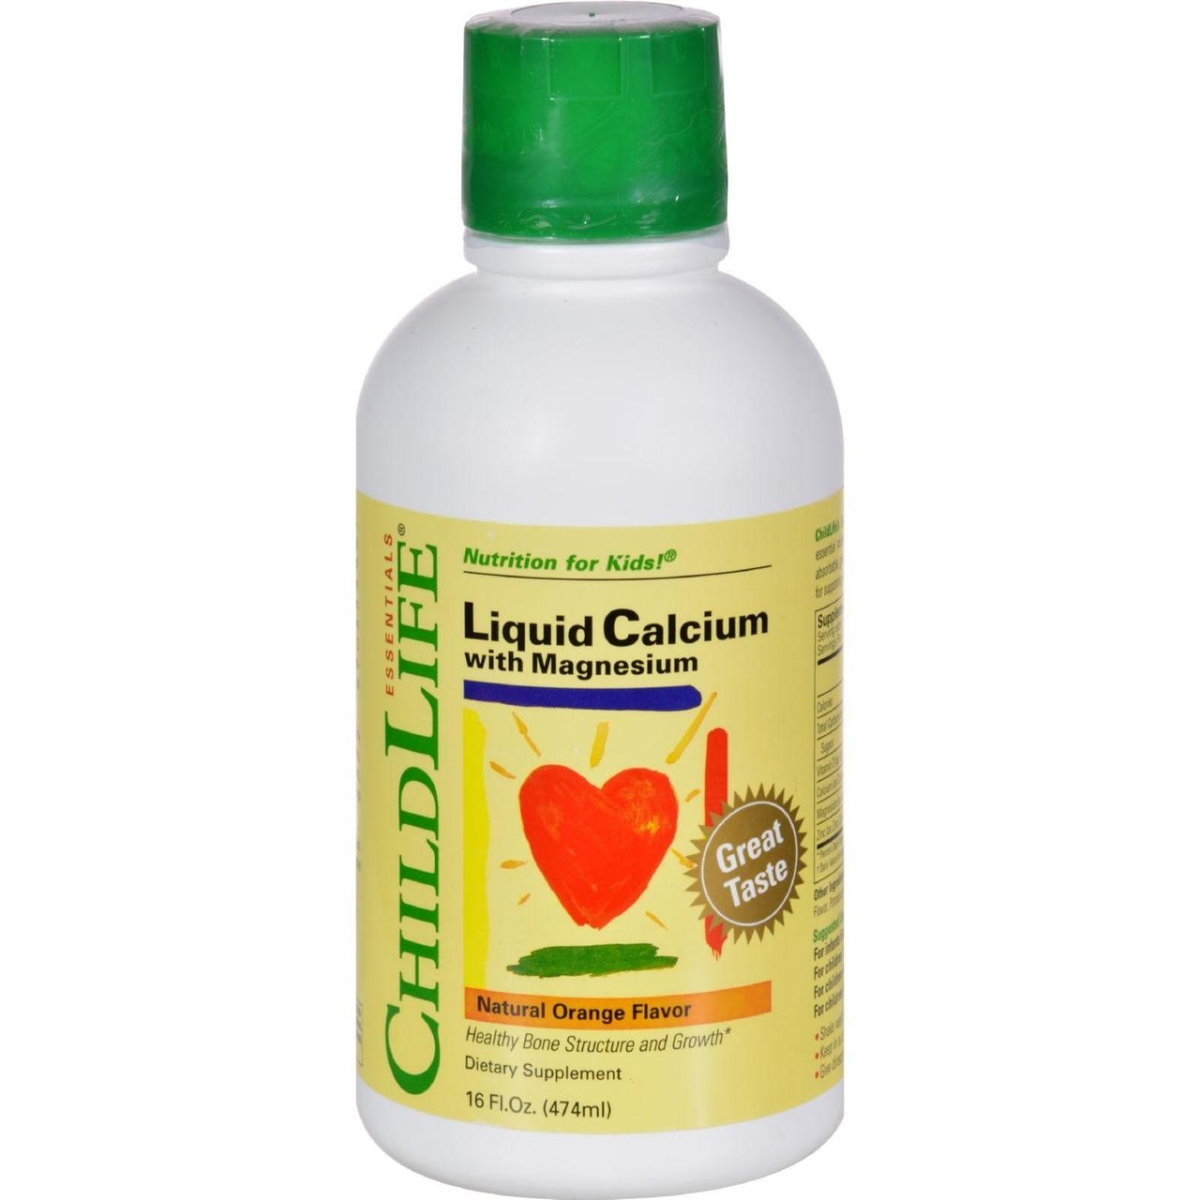 Child Life Hg0690636 16 Fl Oz Liquid Calcium With Magnesium - Natural Orange